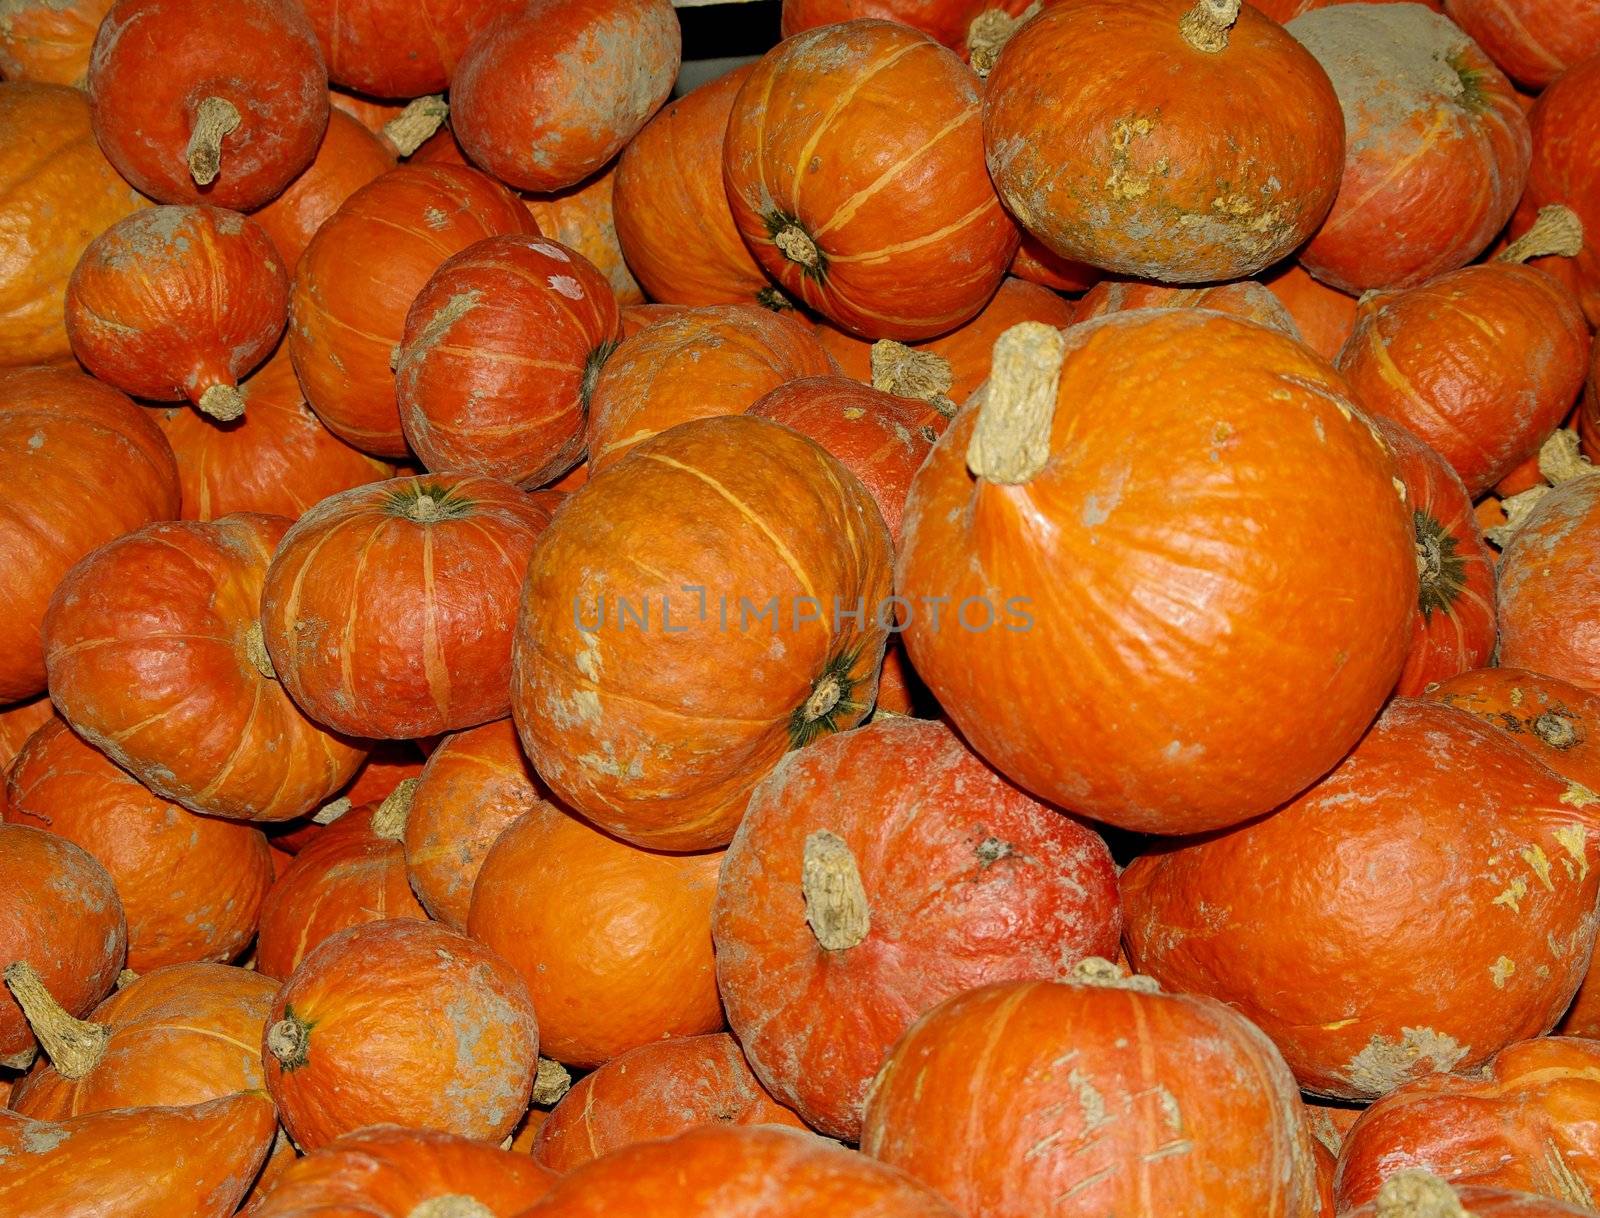 Organically grown pumpkins